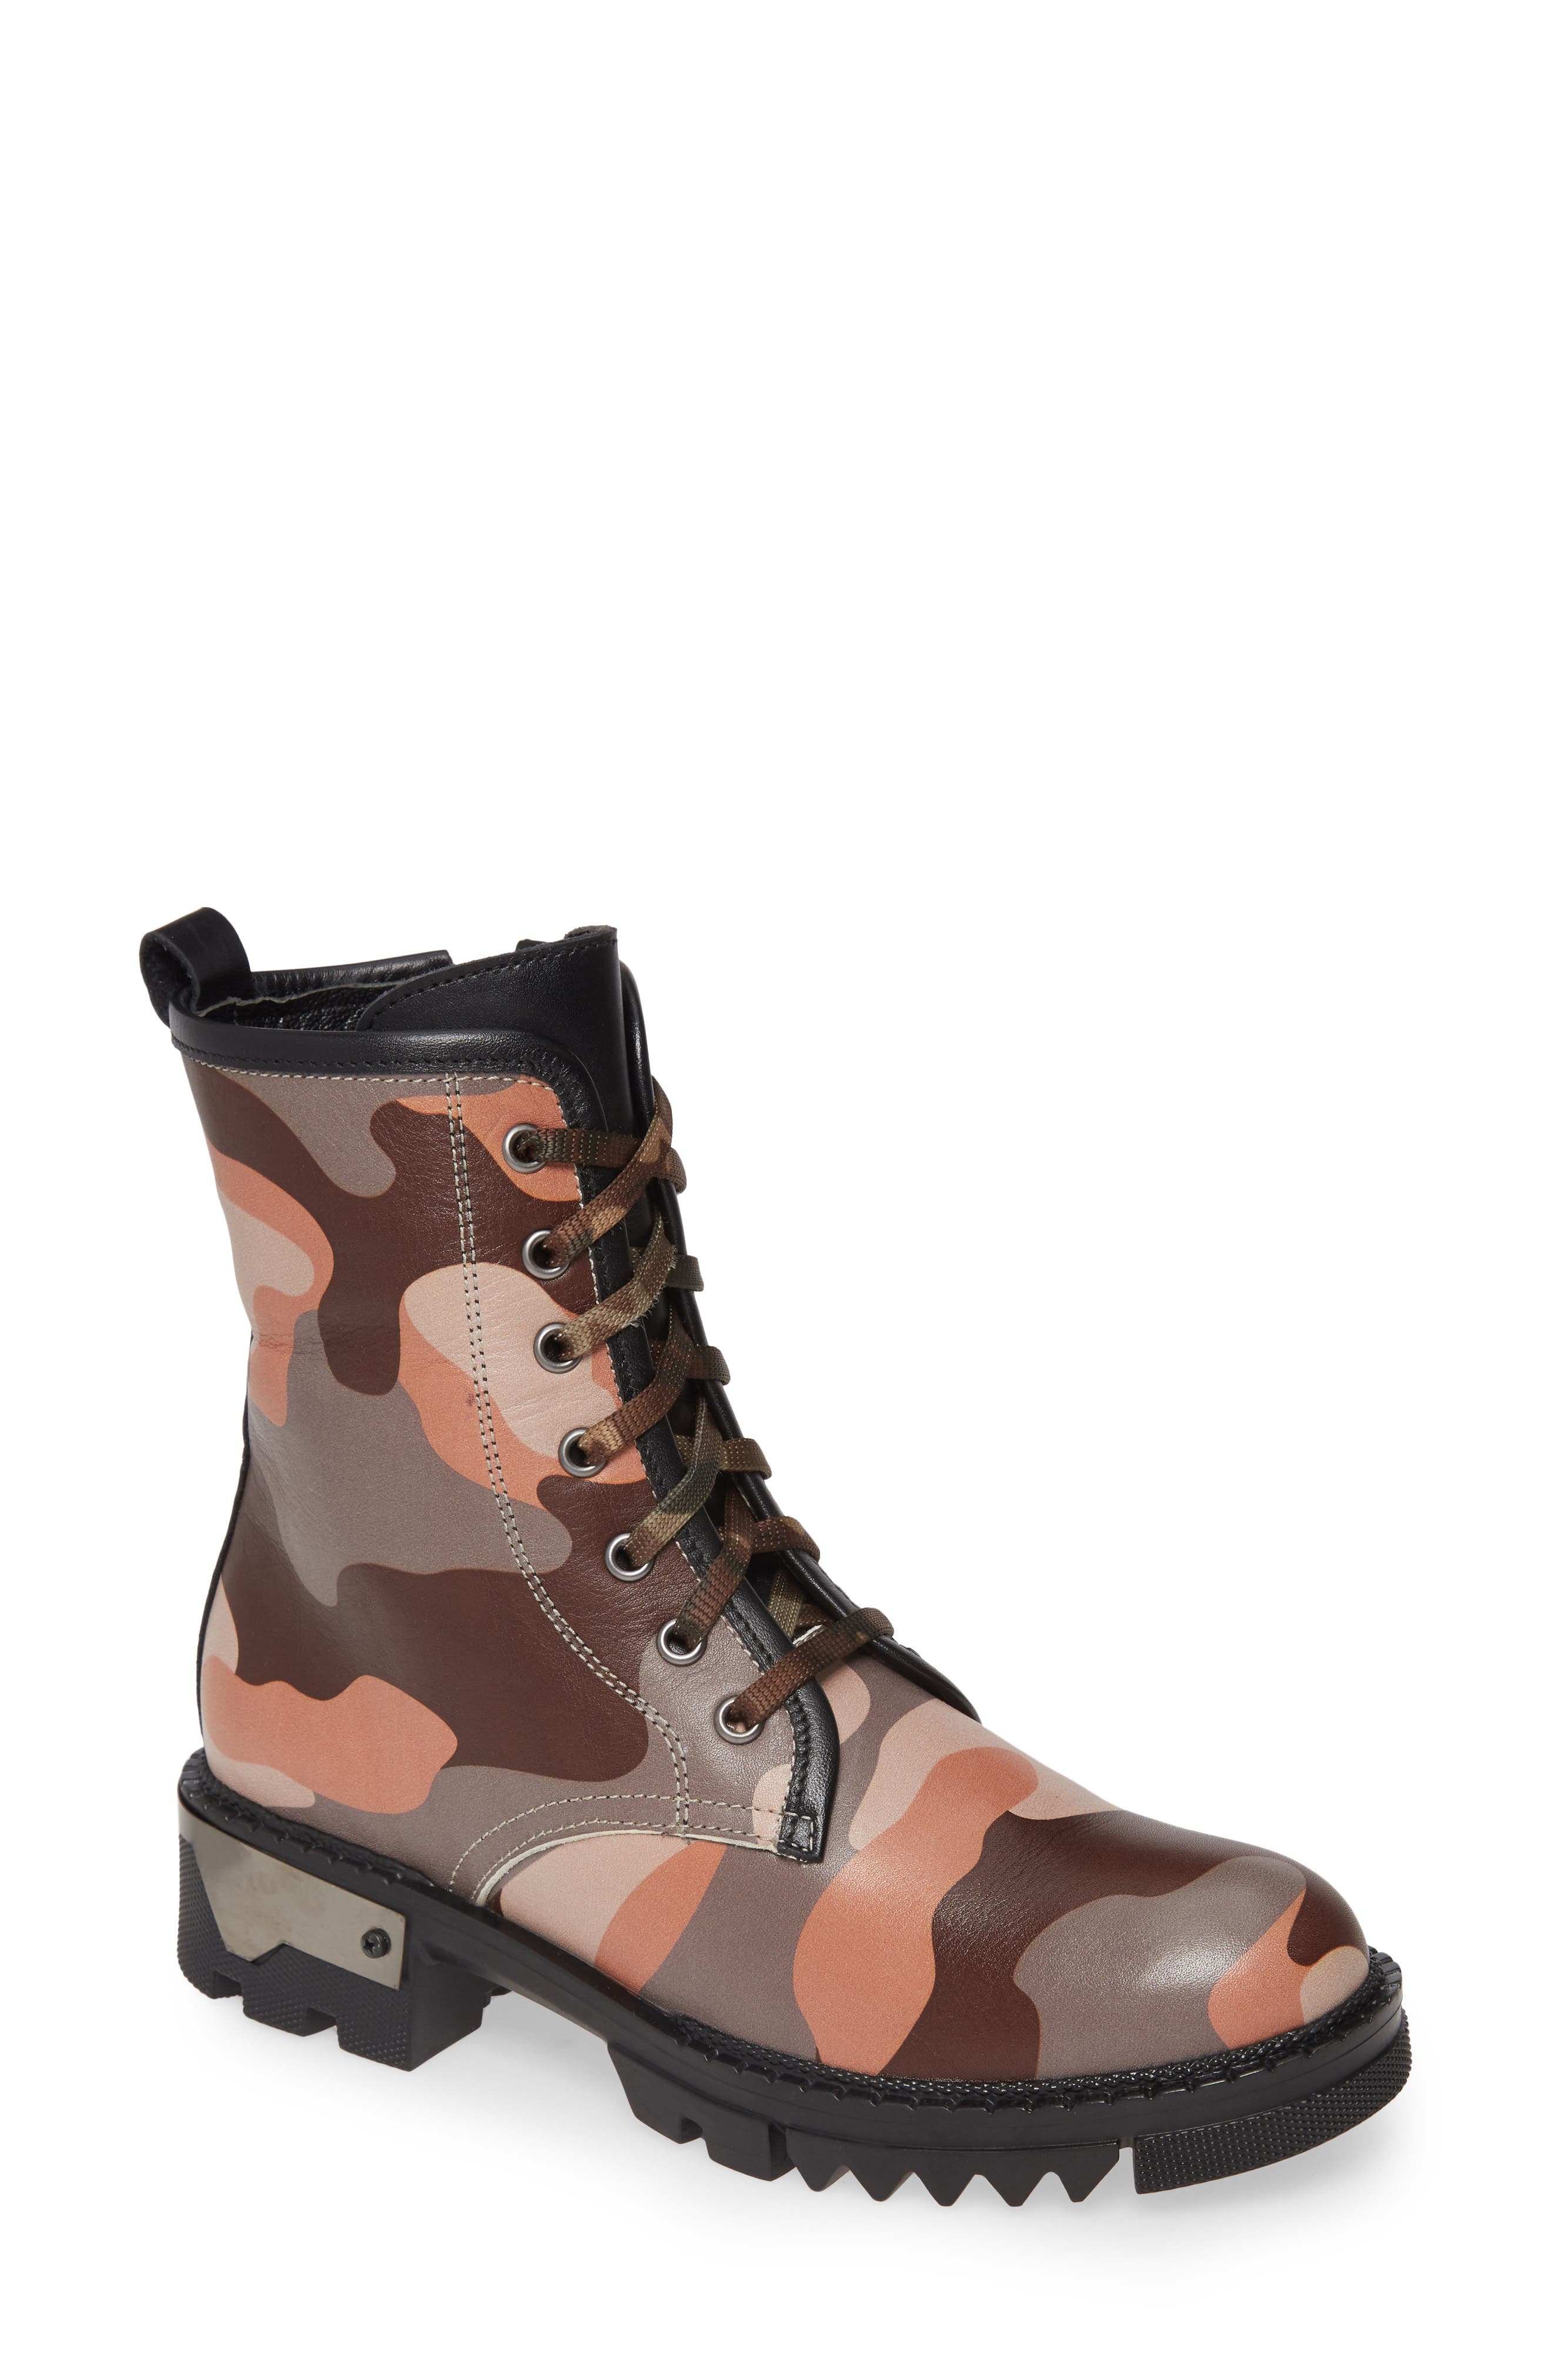 mia hiking boots